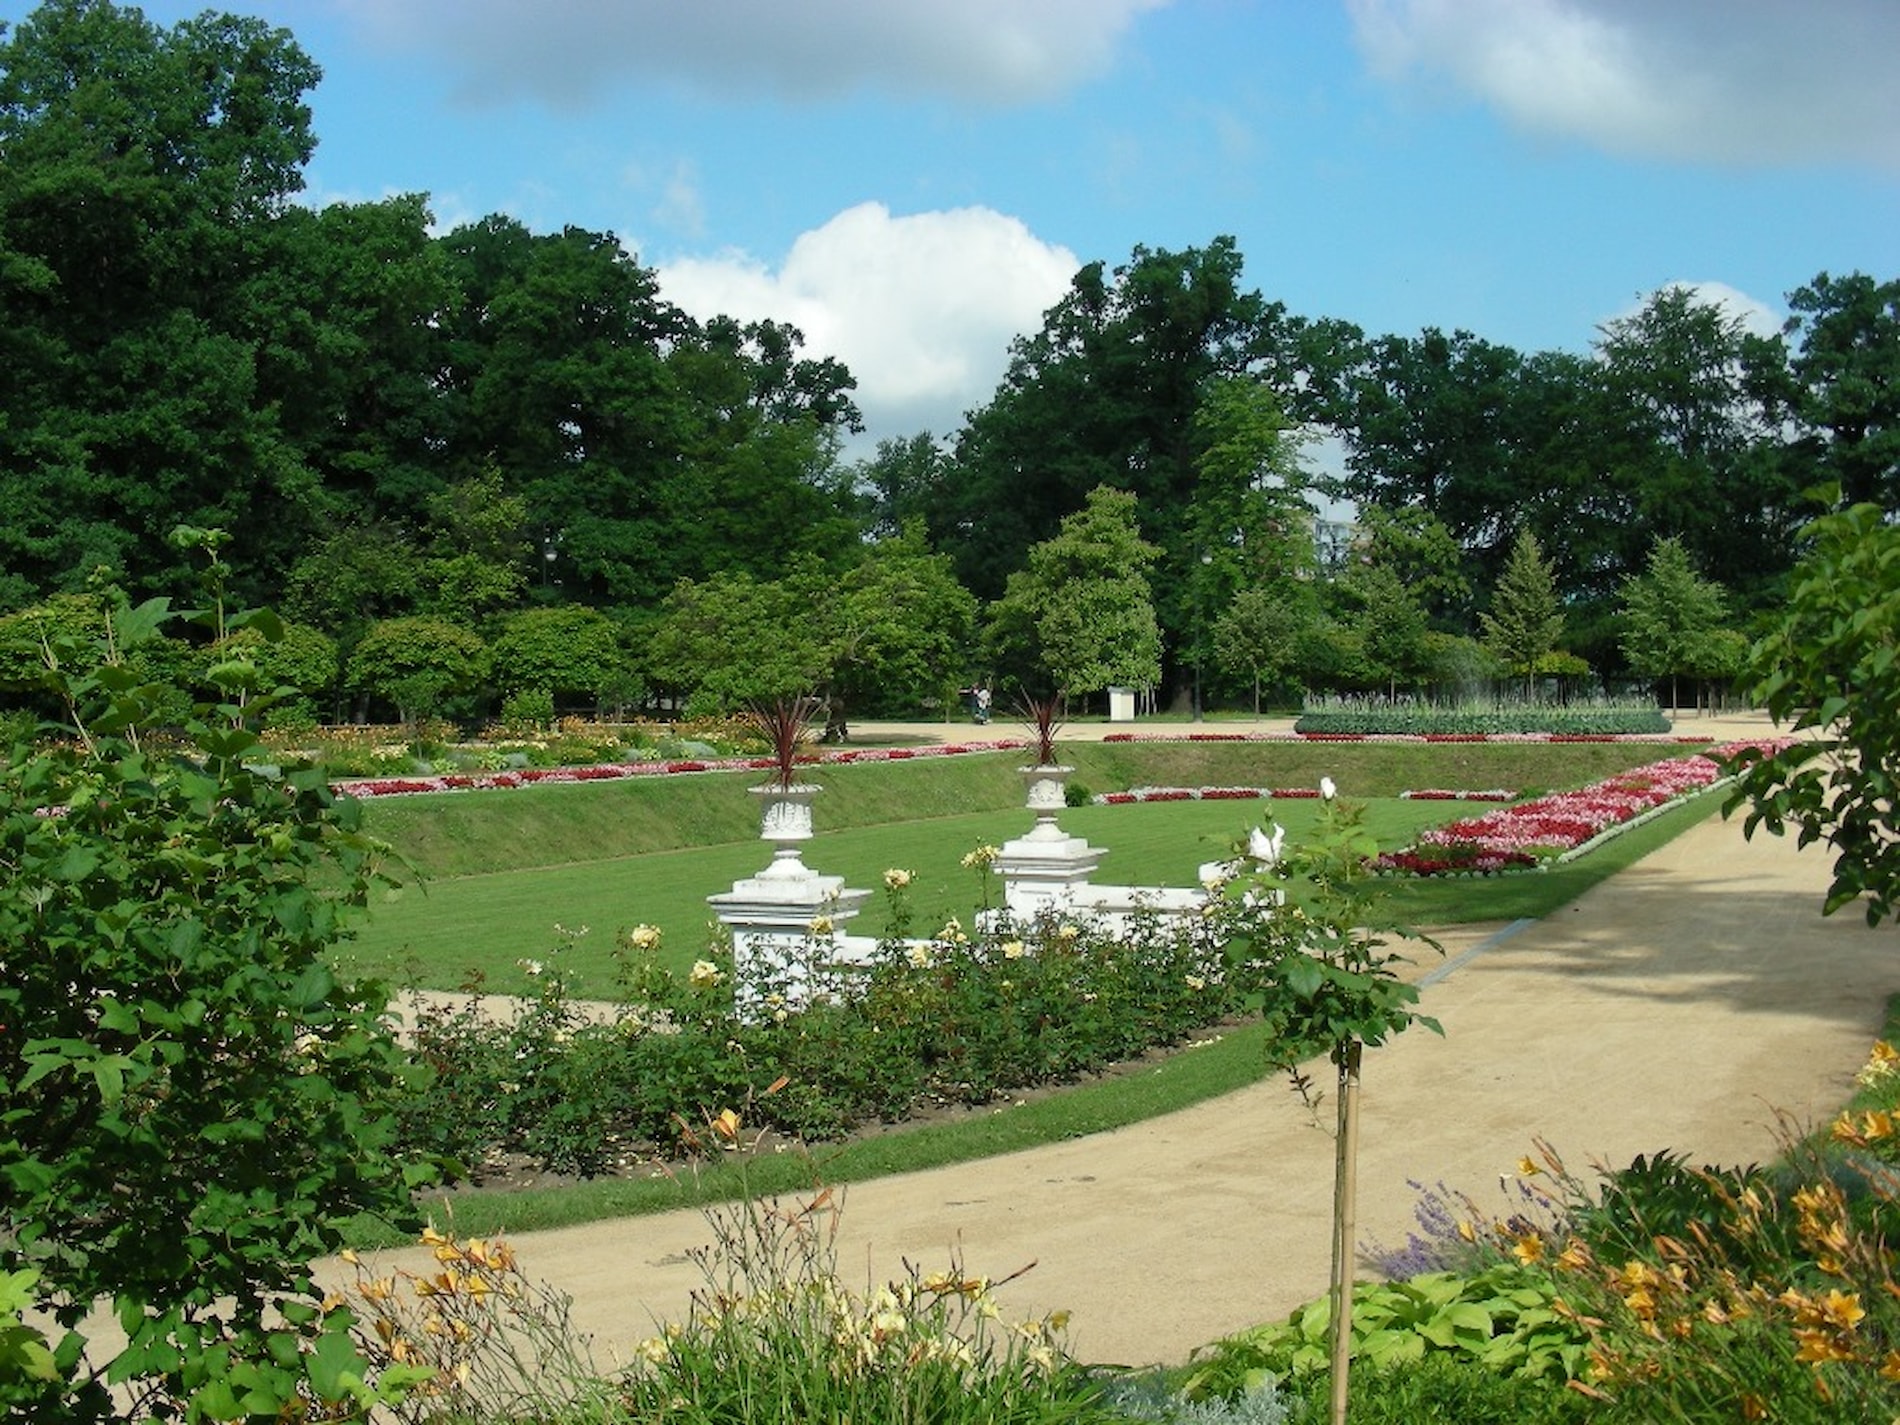 Víkend otevřených zahrad v parku Michalov